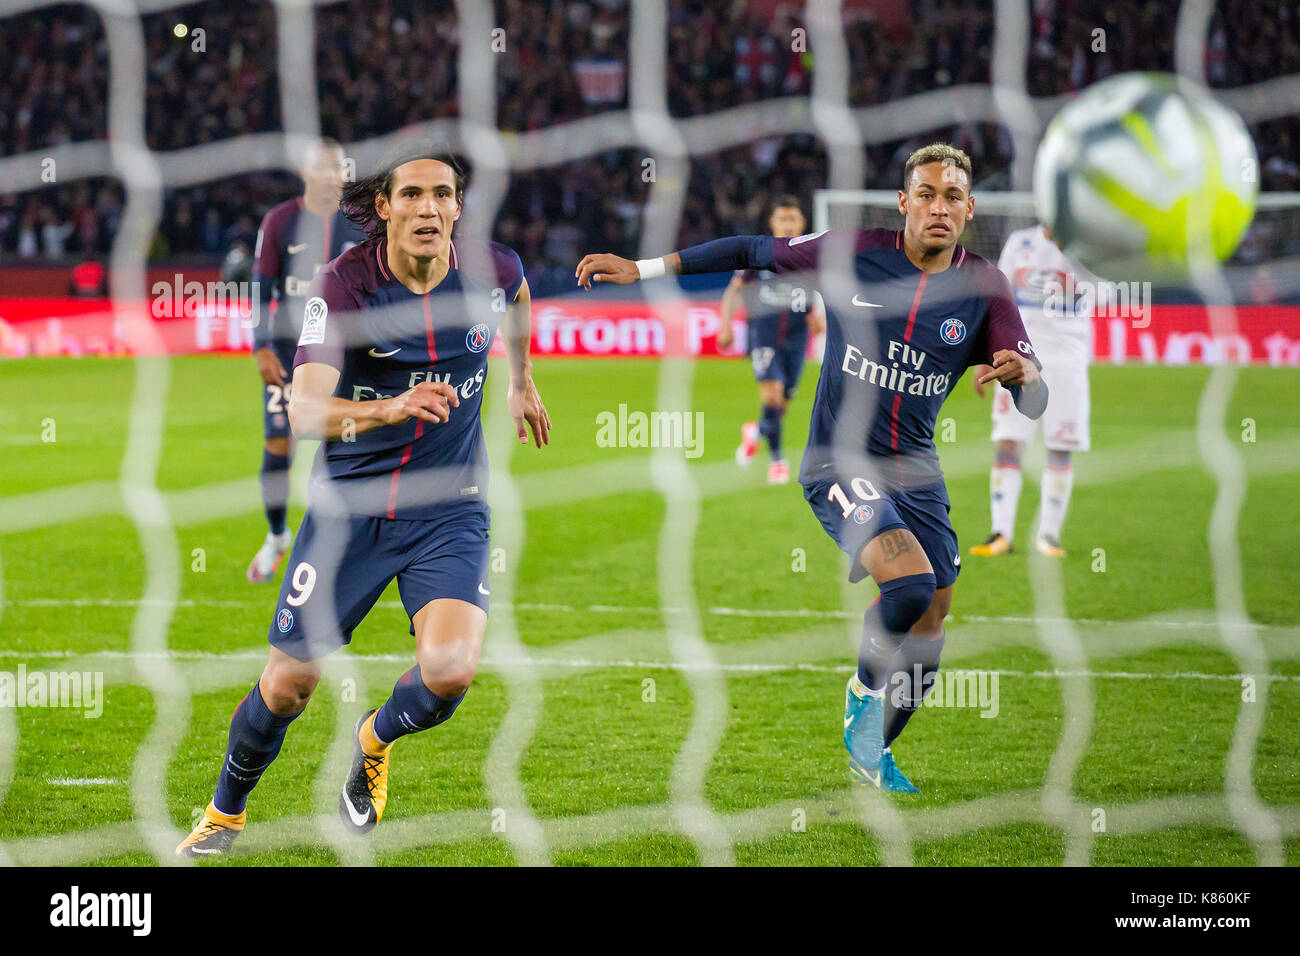 Edinson Cavani e Neymar Jr in azione durante il French Ligue 1 partita di calcio tra Paris Saint Germain (PSG) e Olympique Lyonnais (OL) presso il Parc des Princes. Il 17 settembre 2017 a Parigi, Francia Foto Stock